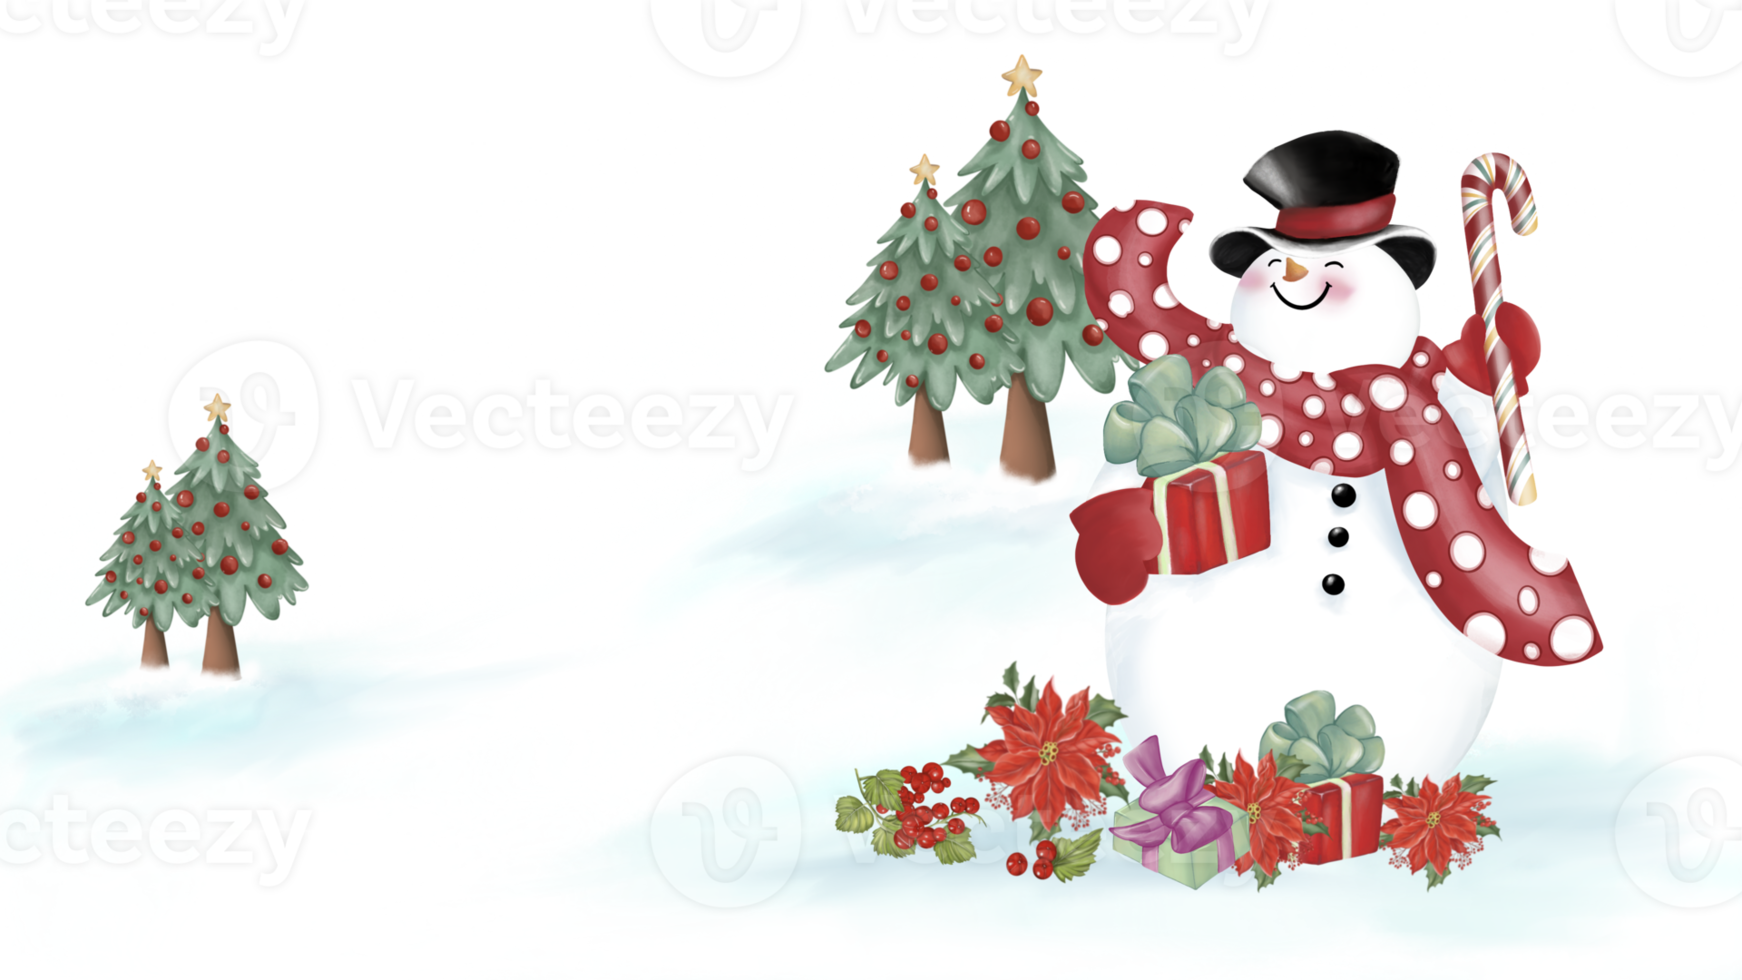 bonhomme de neige avec un chapeau noir et une écharpe rouge avec motif circulaire tient une boîte-cadeau et une canne en bonbon. coffrets cadeaux, fleurs de noël et baies sur la neige. arbres de noël derrière. image aquarelle. png